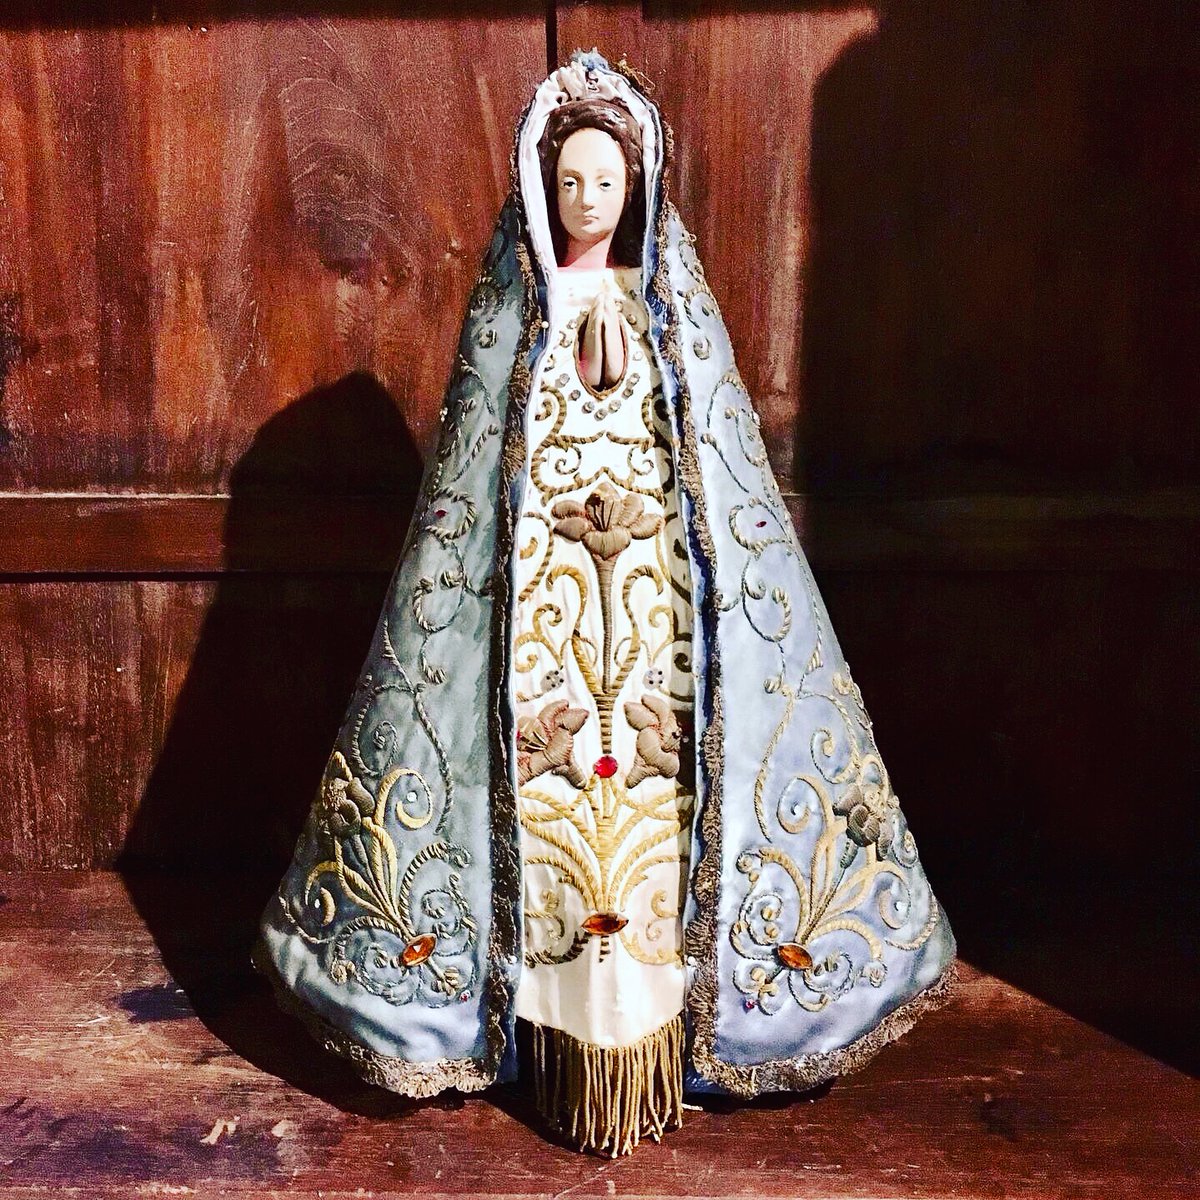 “Una memoria fuerte garantiza un futuro seguro. Recuerden todo lo que la Virgen ha hecho en nuestra Patria. Déjense acompañar por ella y acompáñenla en su camino”. 

8 de mayo, Día de Nuestra Señora de Luján. Patrona y guía de Argentina. La Jefa. 

#Luján #NtraSraDeLuján #LaJefa